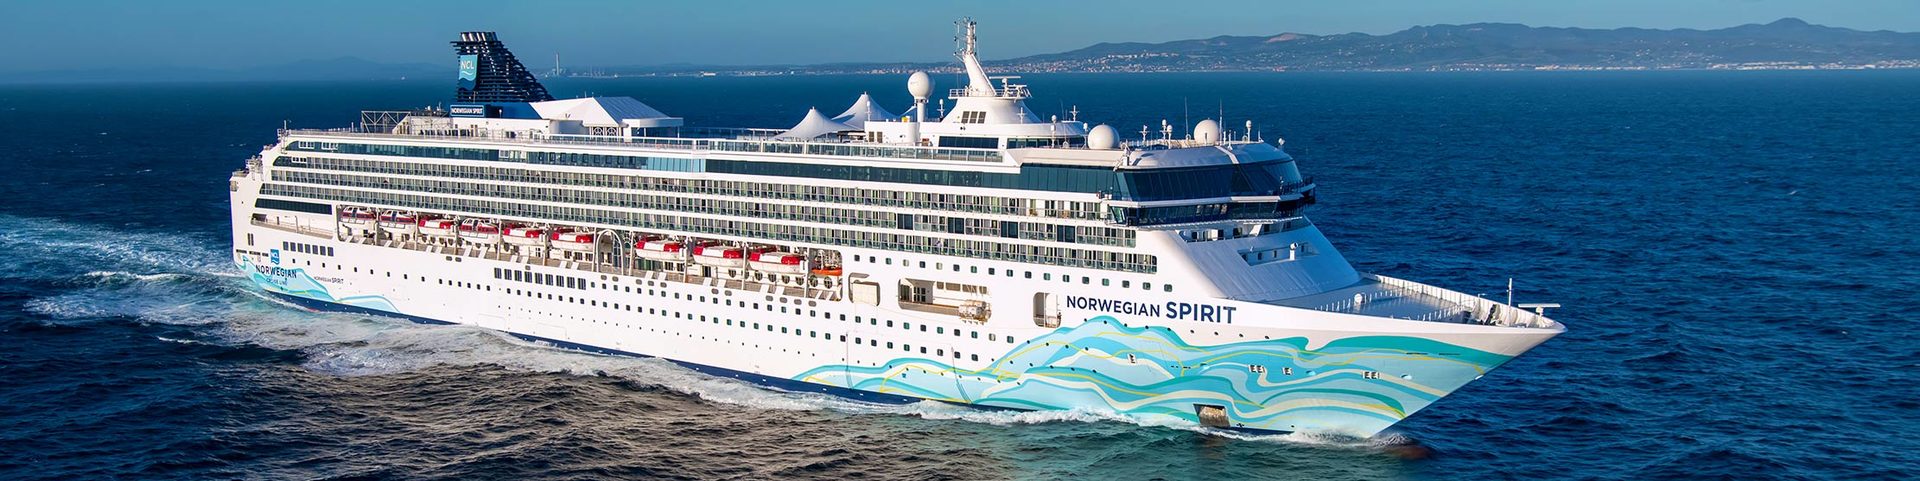 Norwegian Cruise Line představuje po více než 100milionové revitalizaci zbrusu novou Norwegian Spirit 